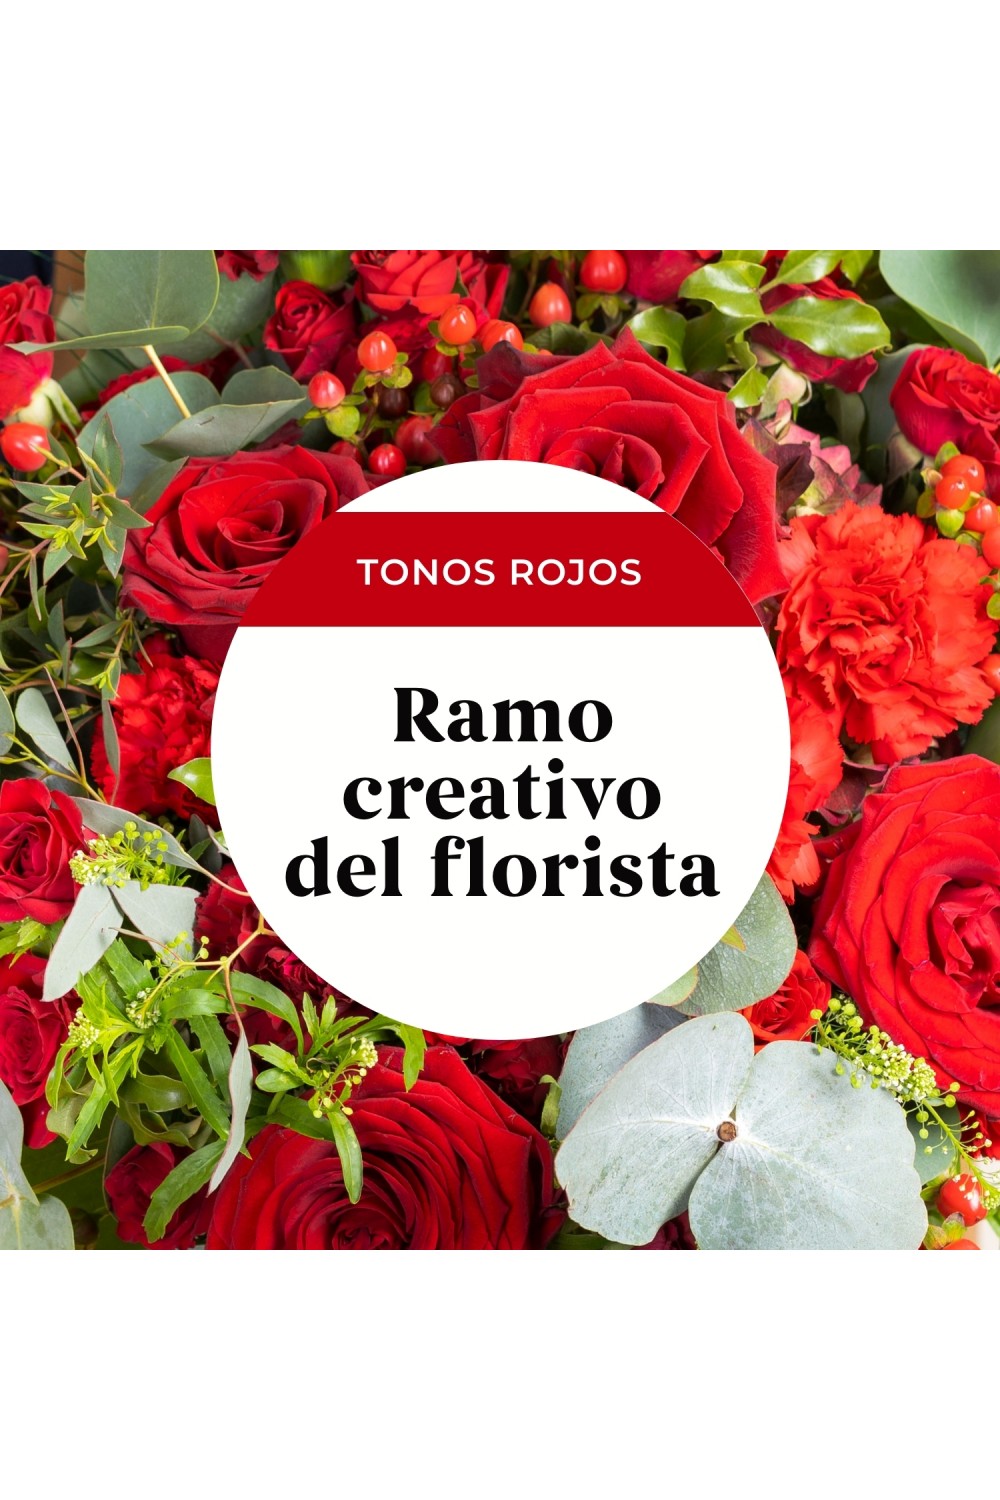 Enviar flores - Ramo de flores en tonos rojos - Interflora